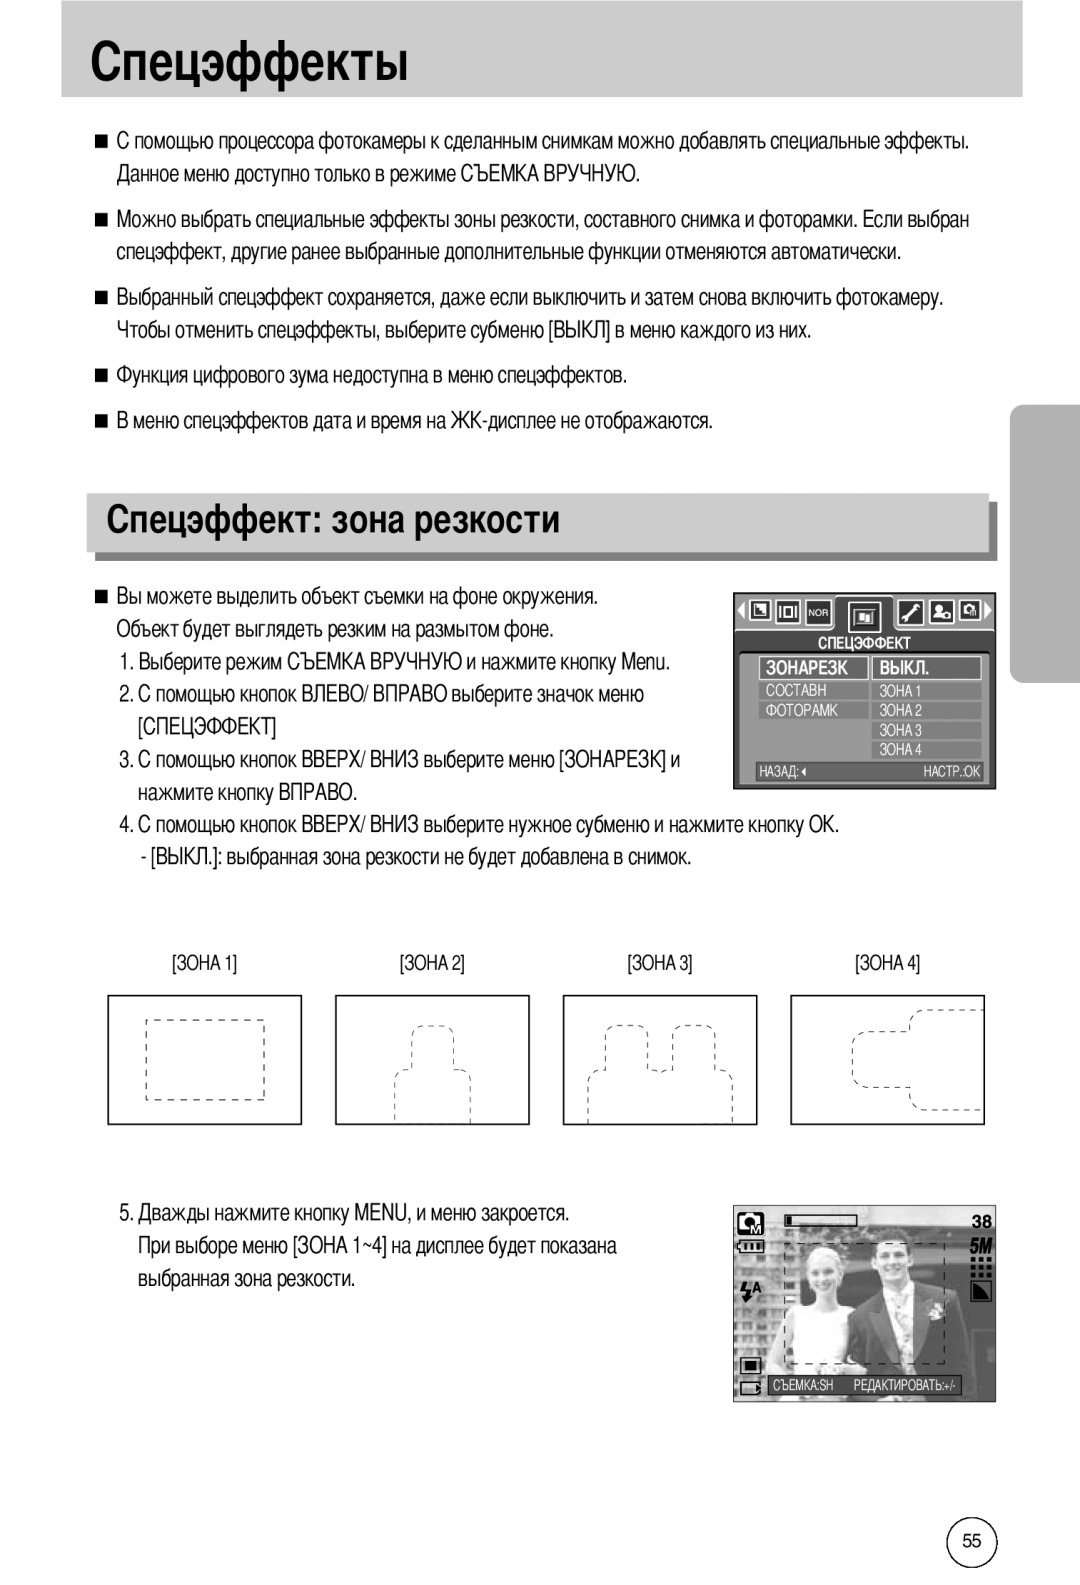 Samsung EC-I50ZZSBA/SP manual Объект будет выглядеть резким на размытом фоне, выбранная зона резкости, нажмите кнопку 